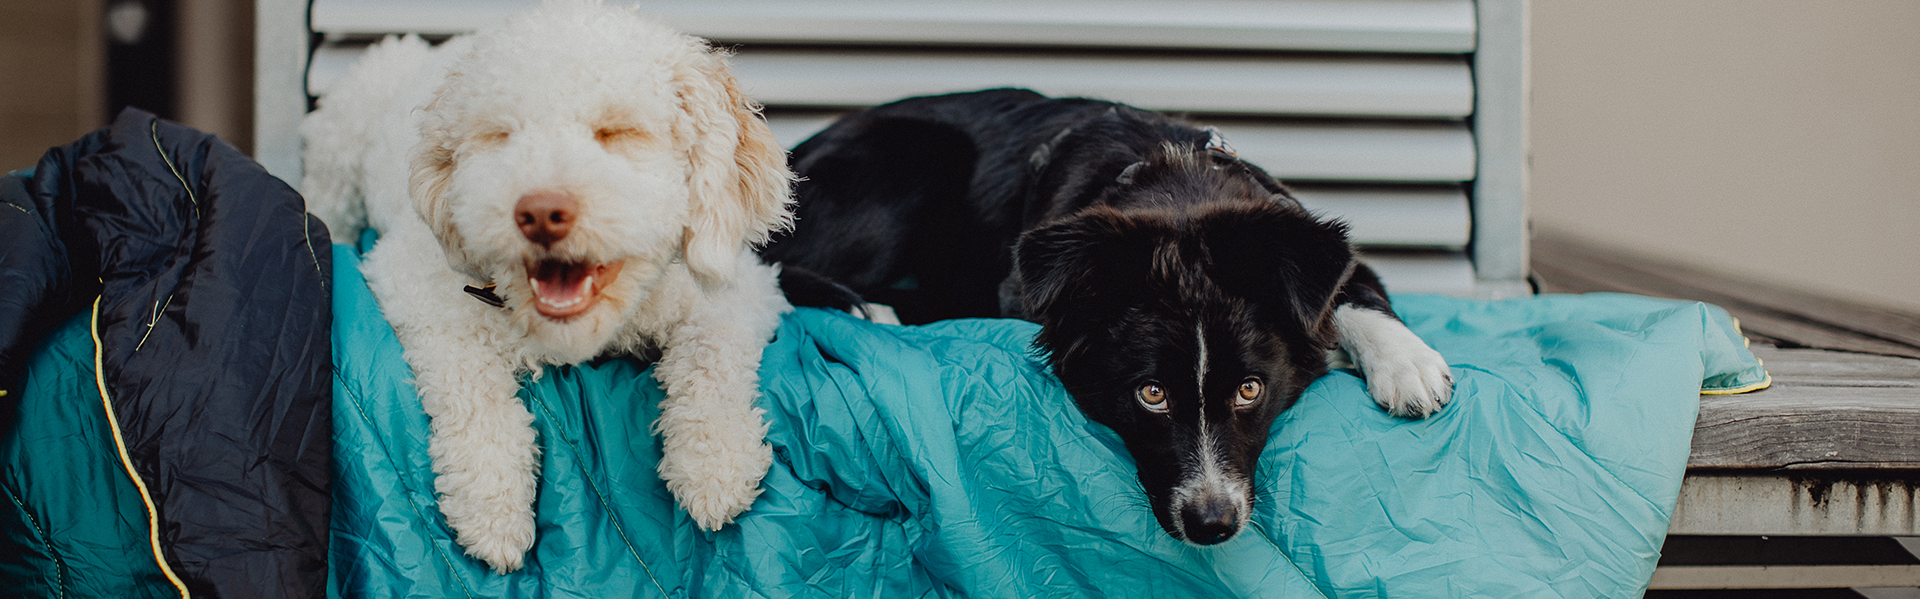 Ein weisser und ein schwarzer Hund liegen auf einer tuerkisfarbenen Campingdecke und schauen in die Kamera